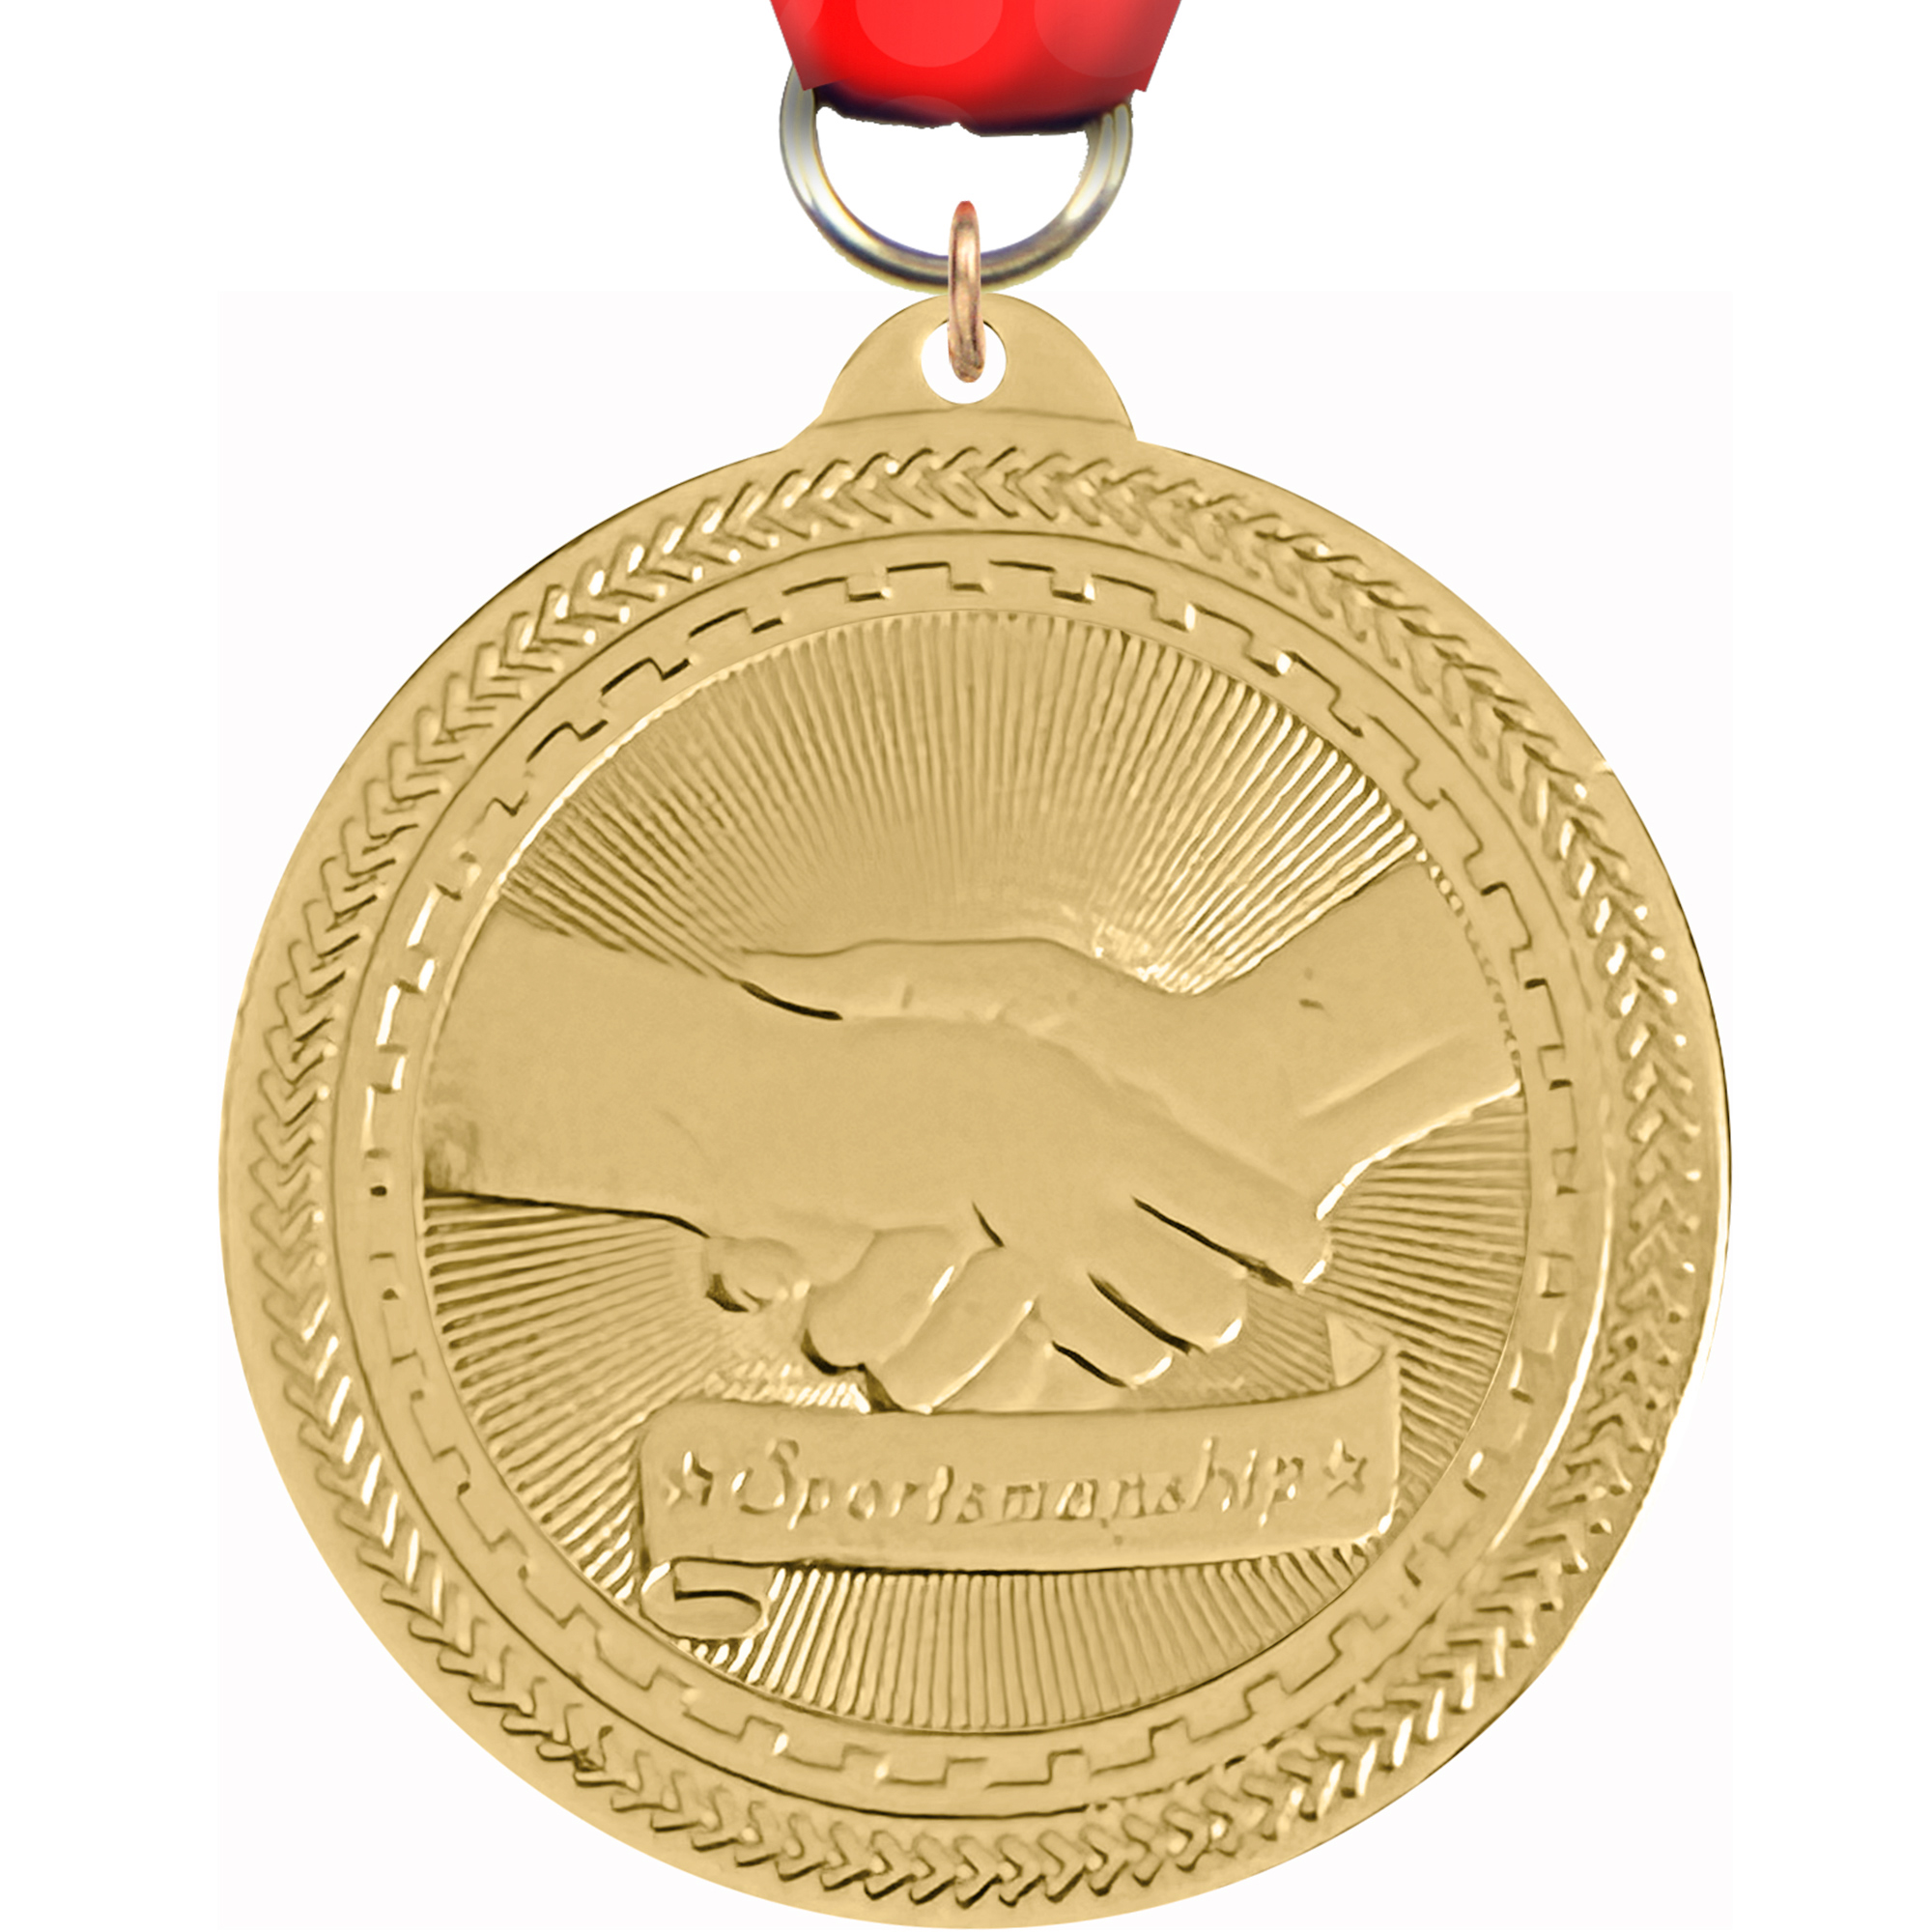 Sportsmanship Britelazer Medal